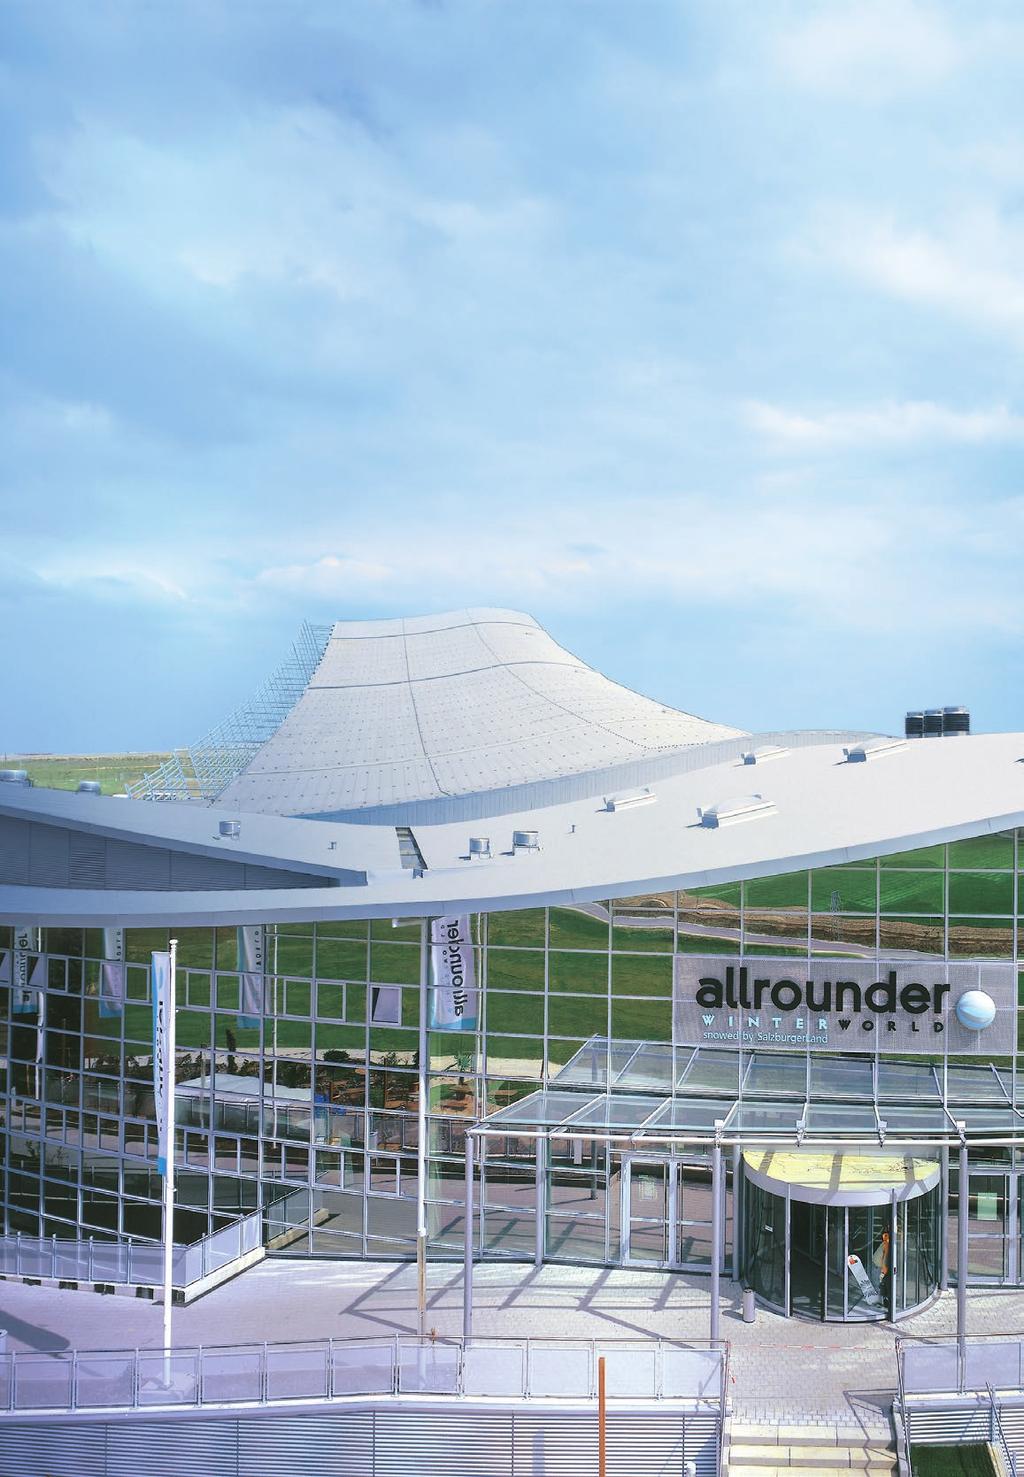 Die allrounder winter world in Neuss bei Düsseldorf ist die größte Schneesporthalle Europas.